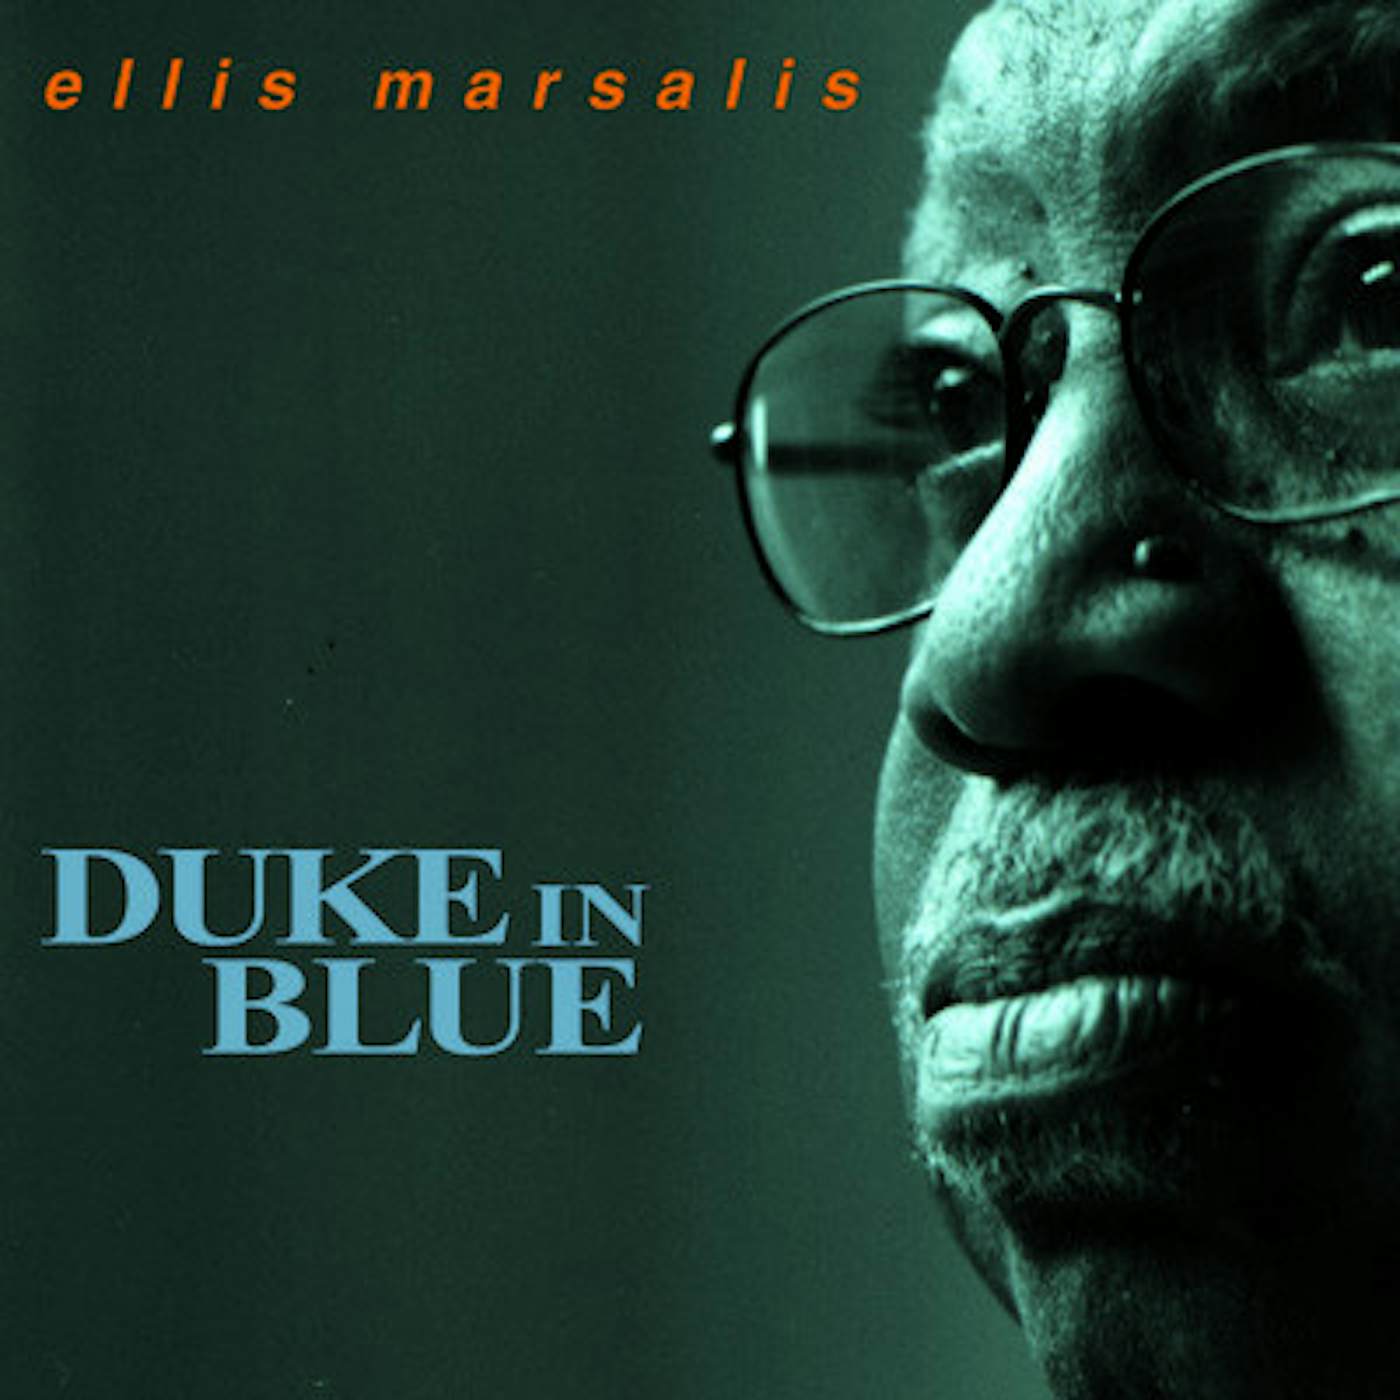 Ellis Marsalis DUKE IN BLUE CD